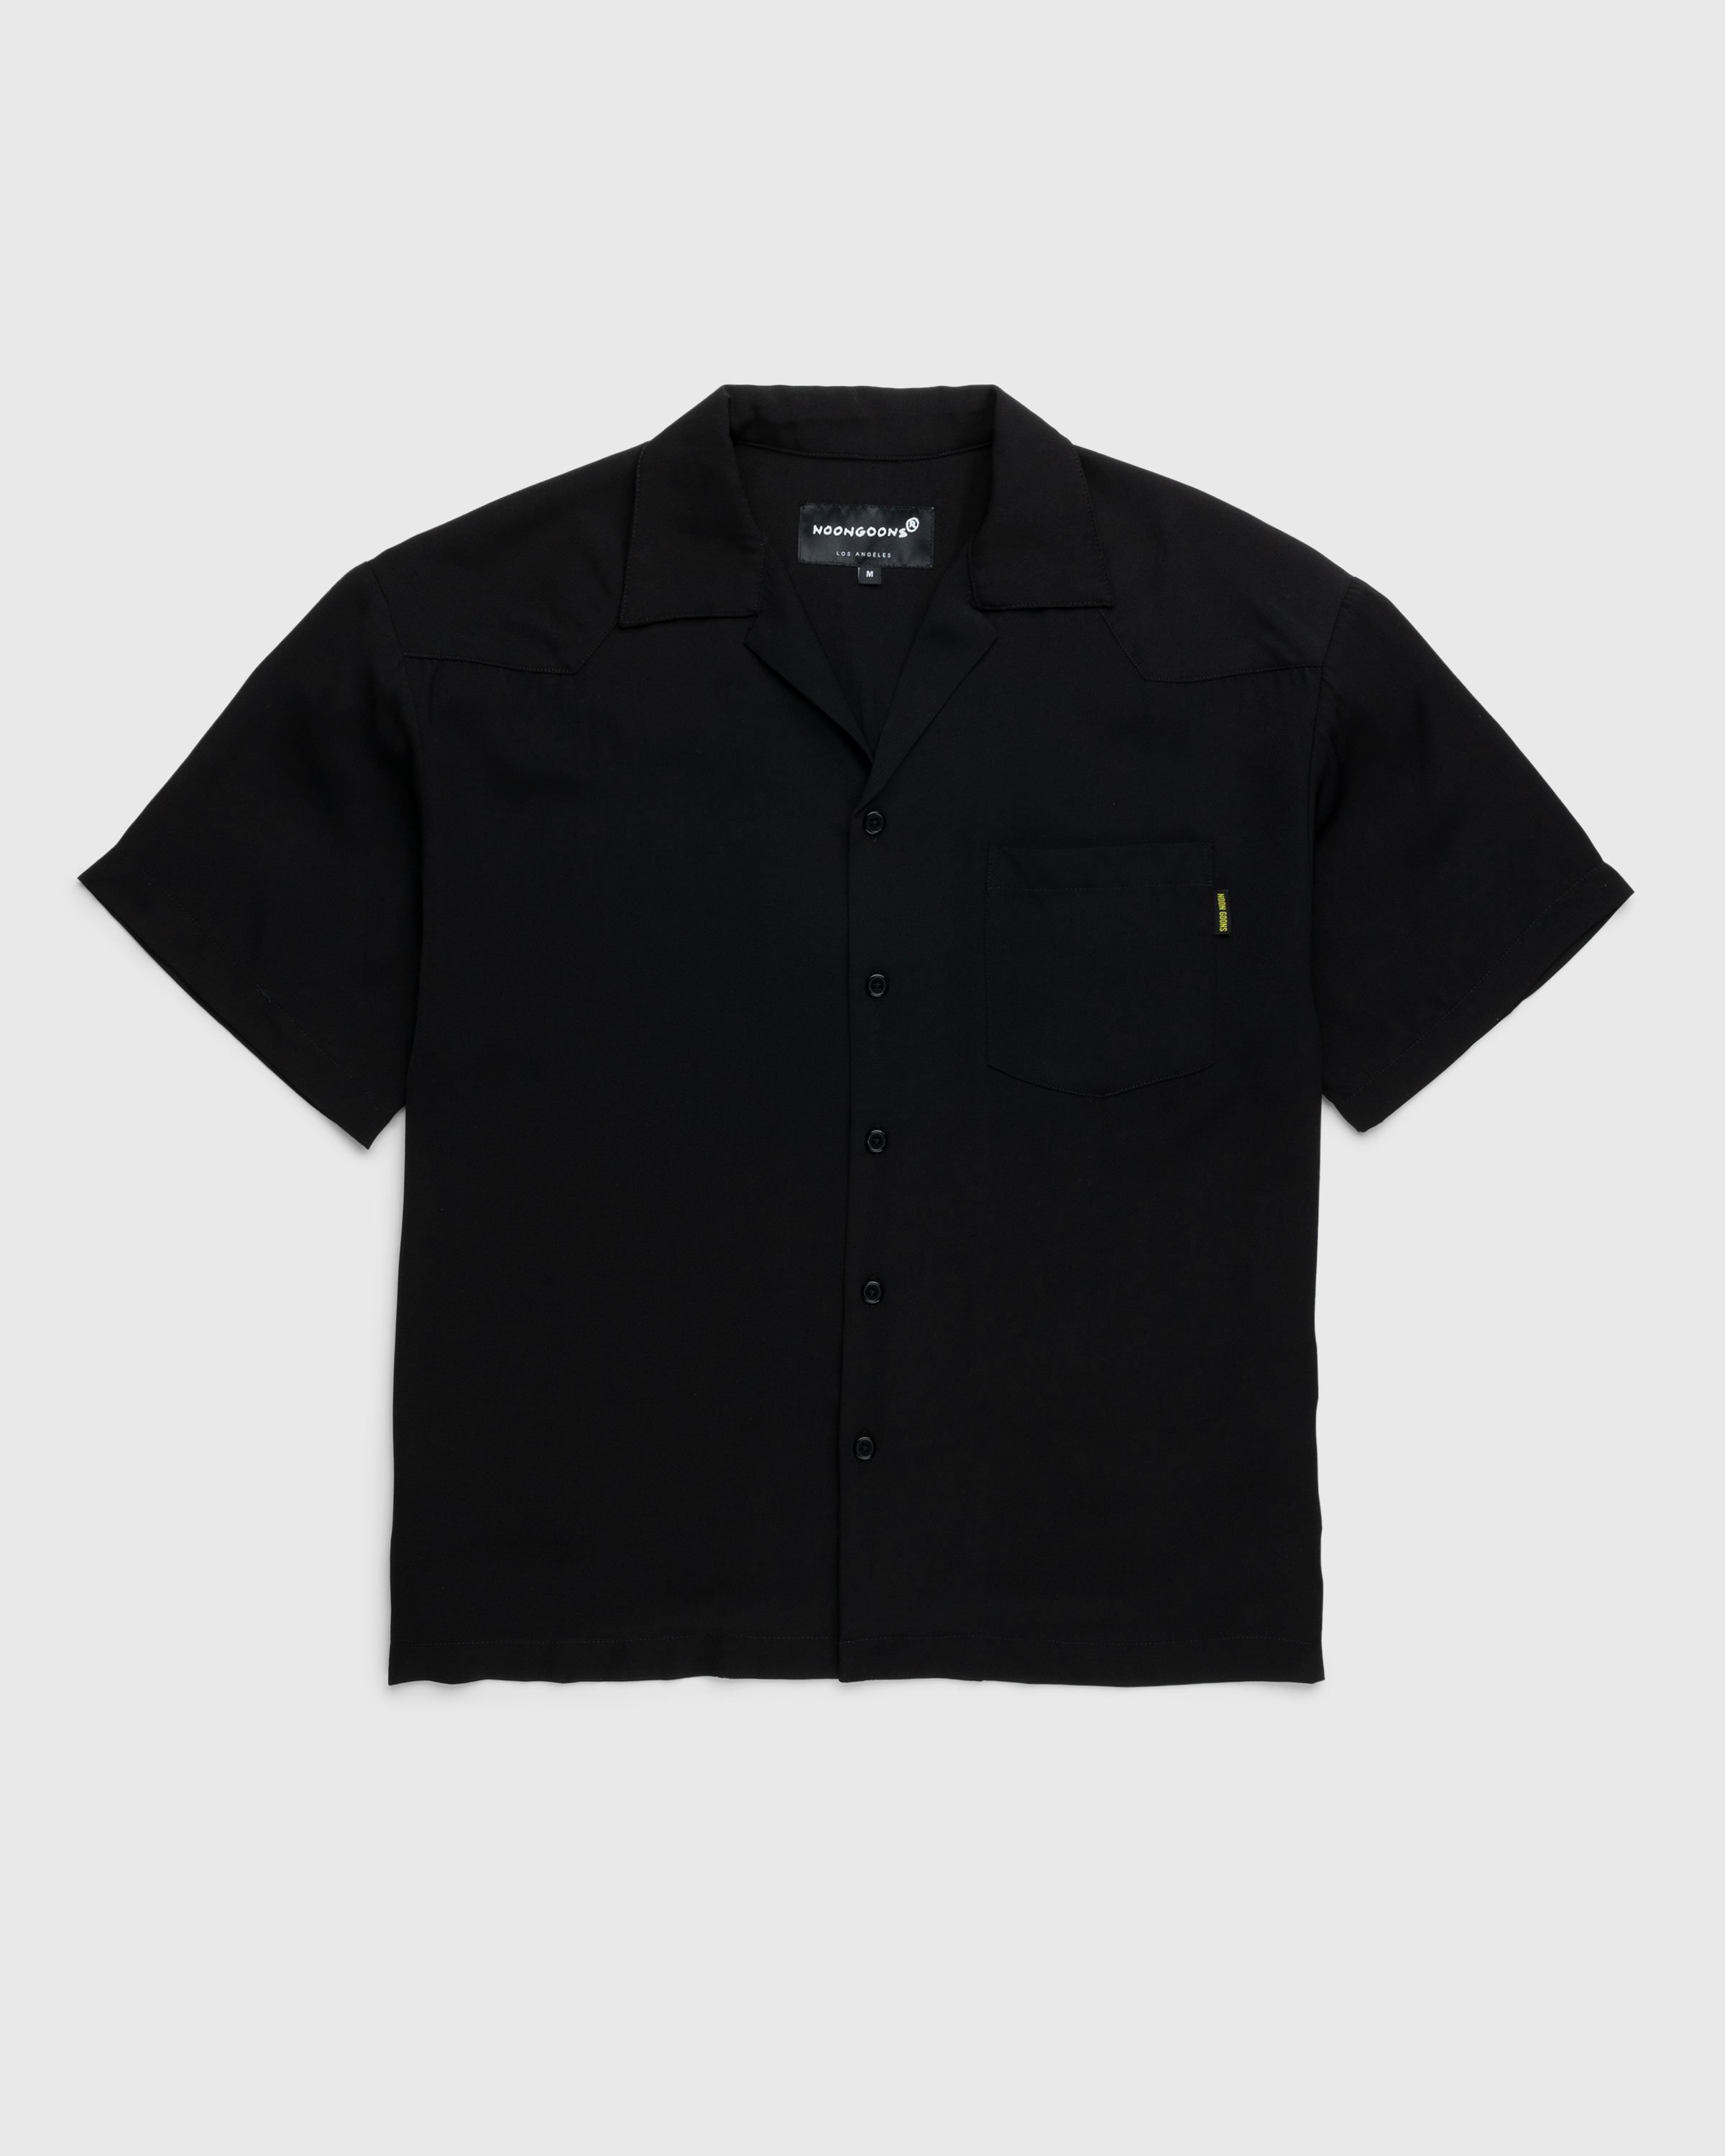 Noon Goons - Kickback Shirt - Clothing - Black - Image 1